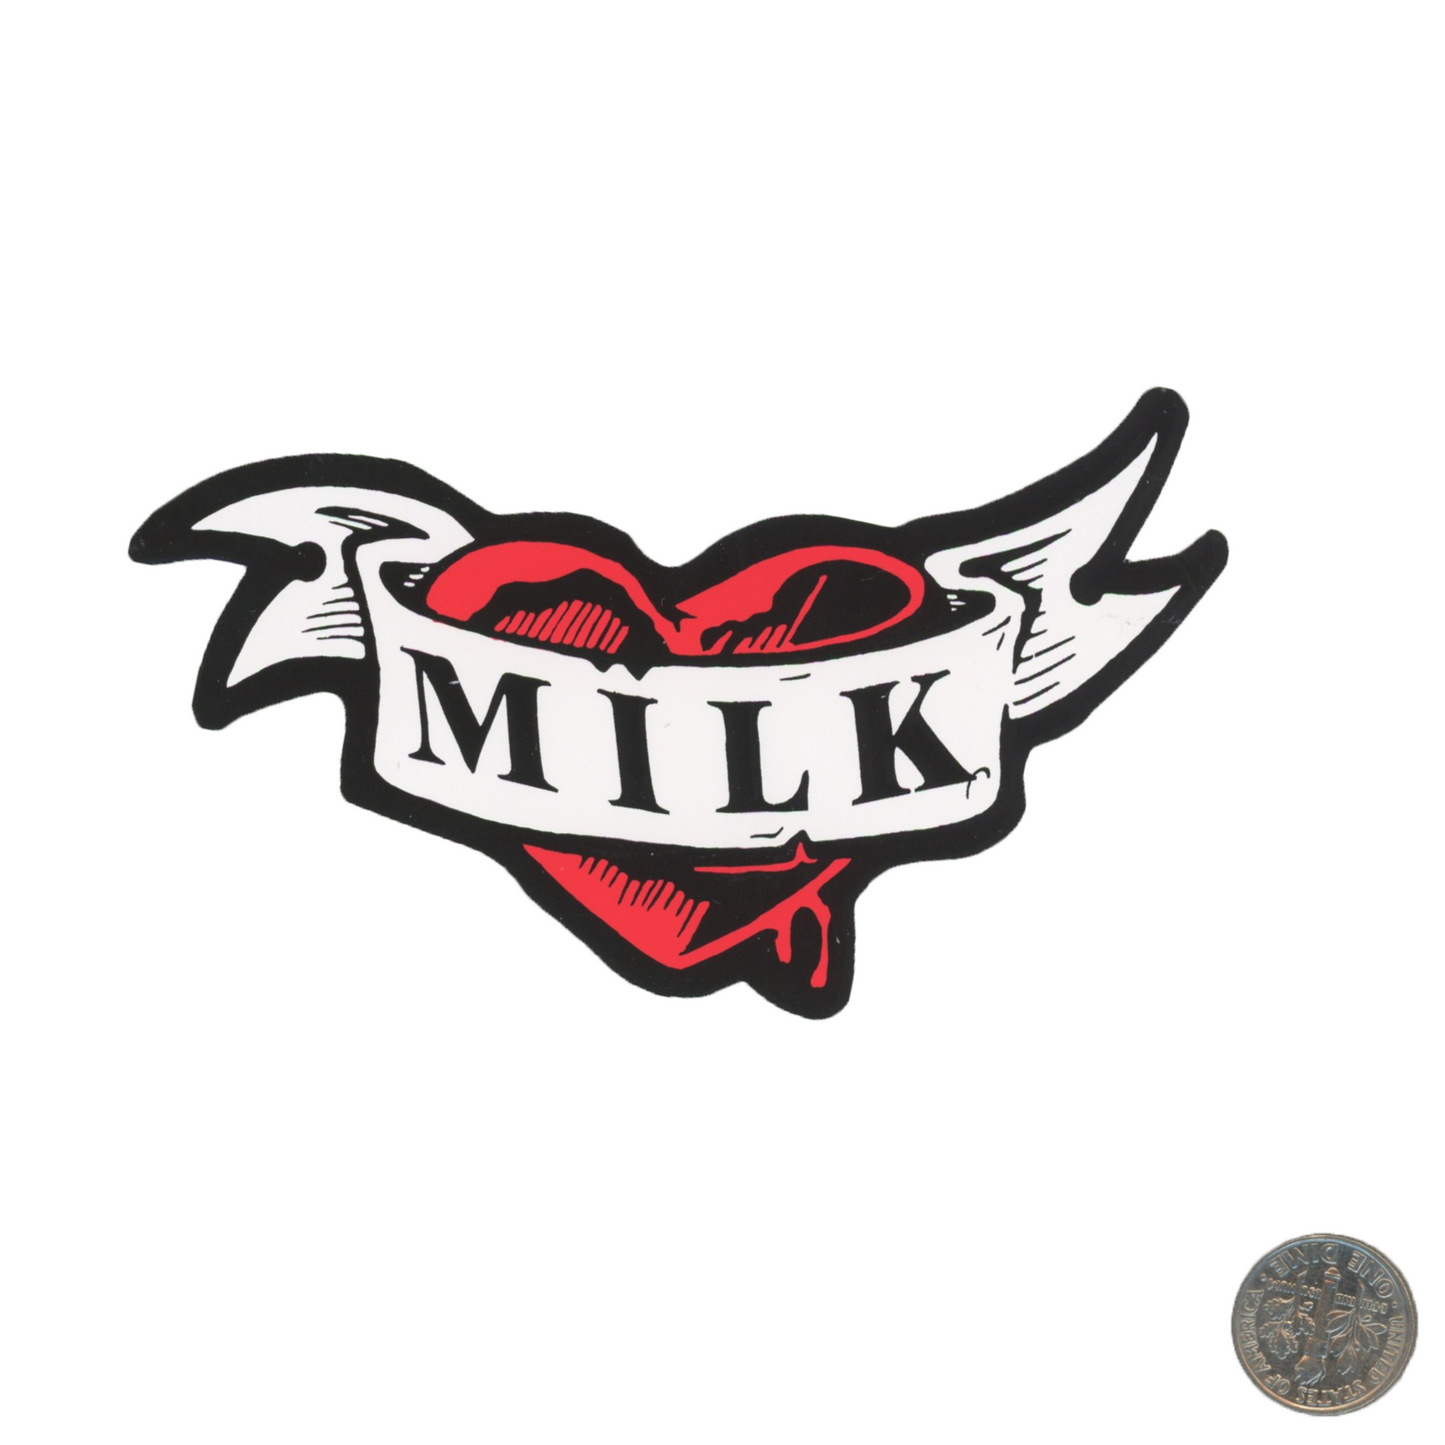 Milk Heart Sticker